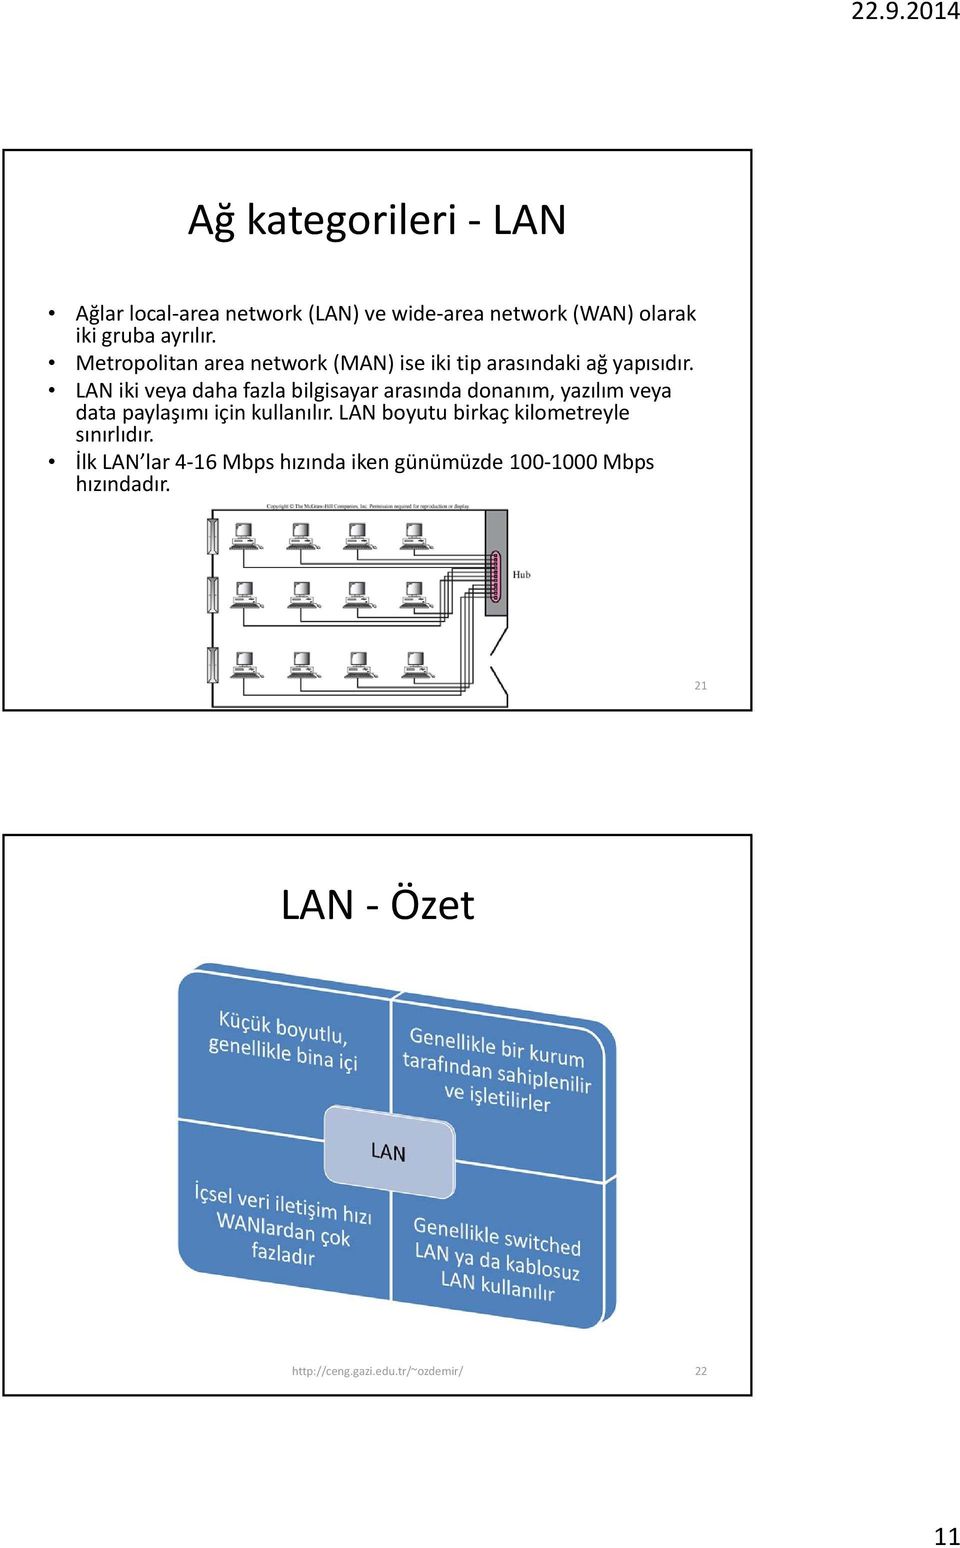 LAN iki veya daha fazla bilgisayar arasında donanım, yazılım veya data paylaşımı için kullanılır.